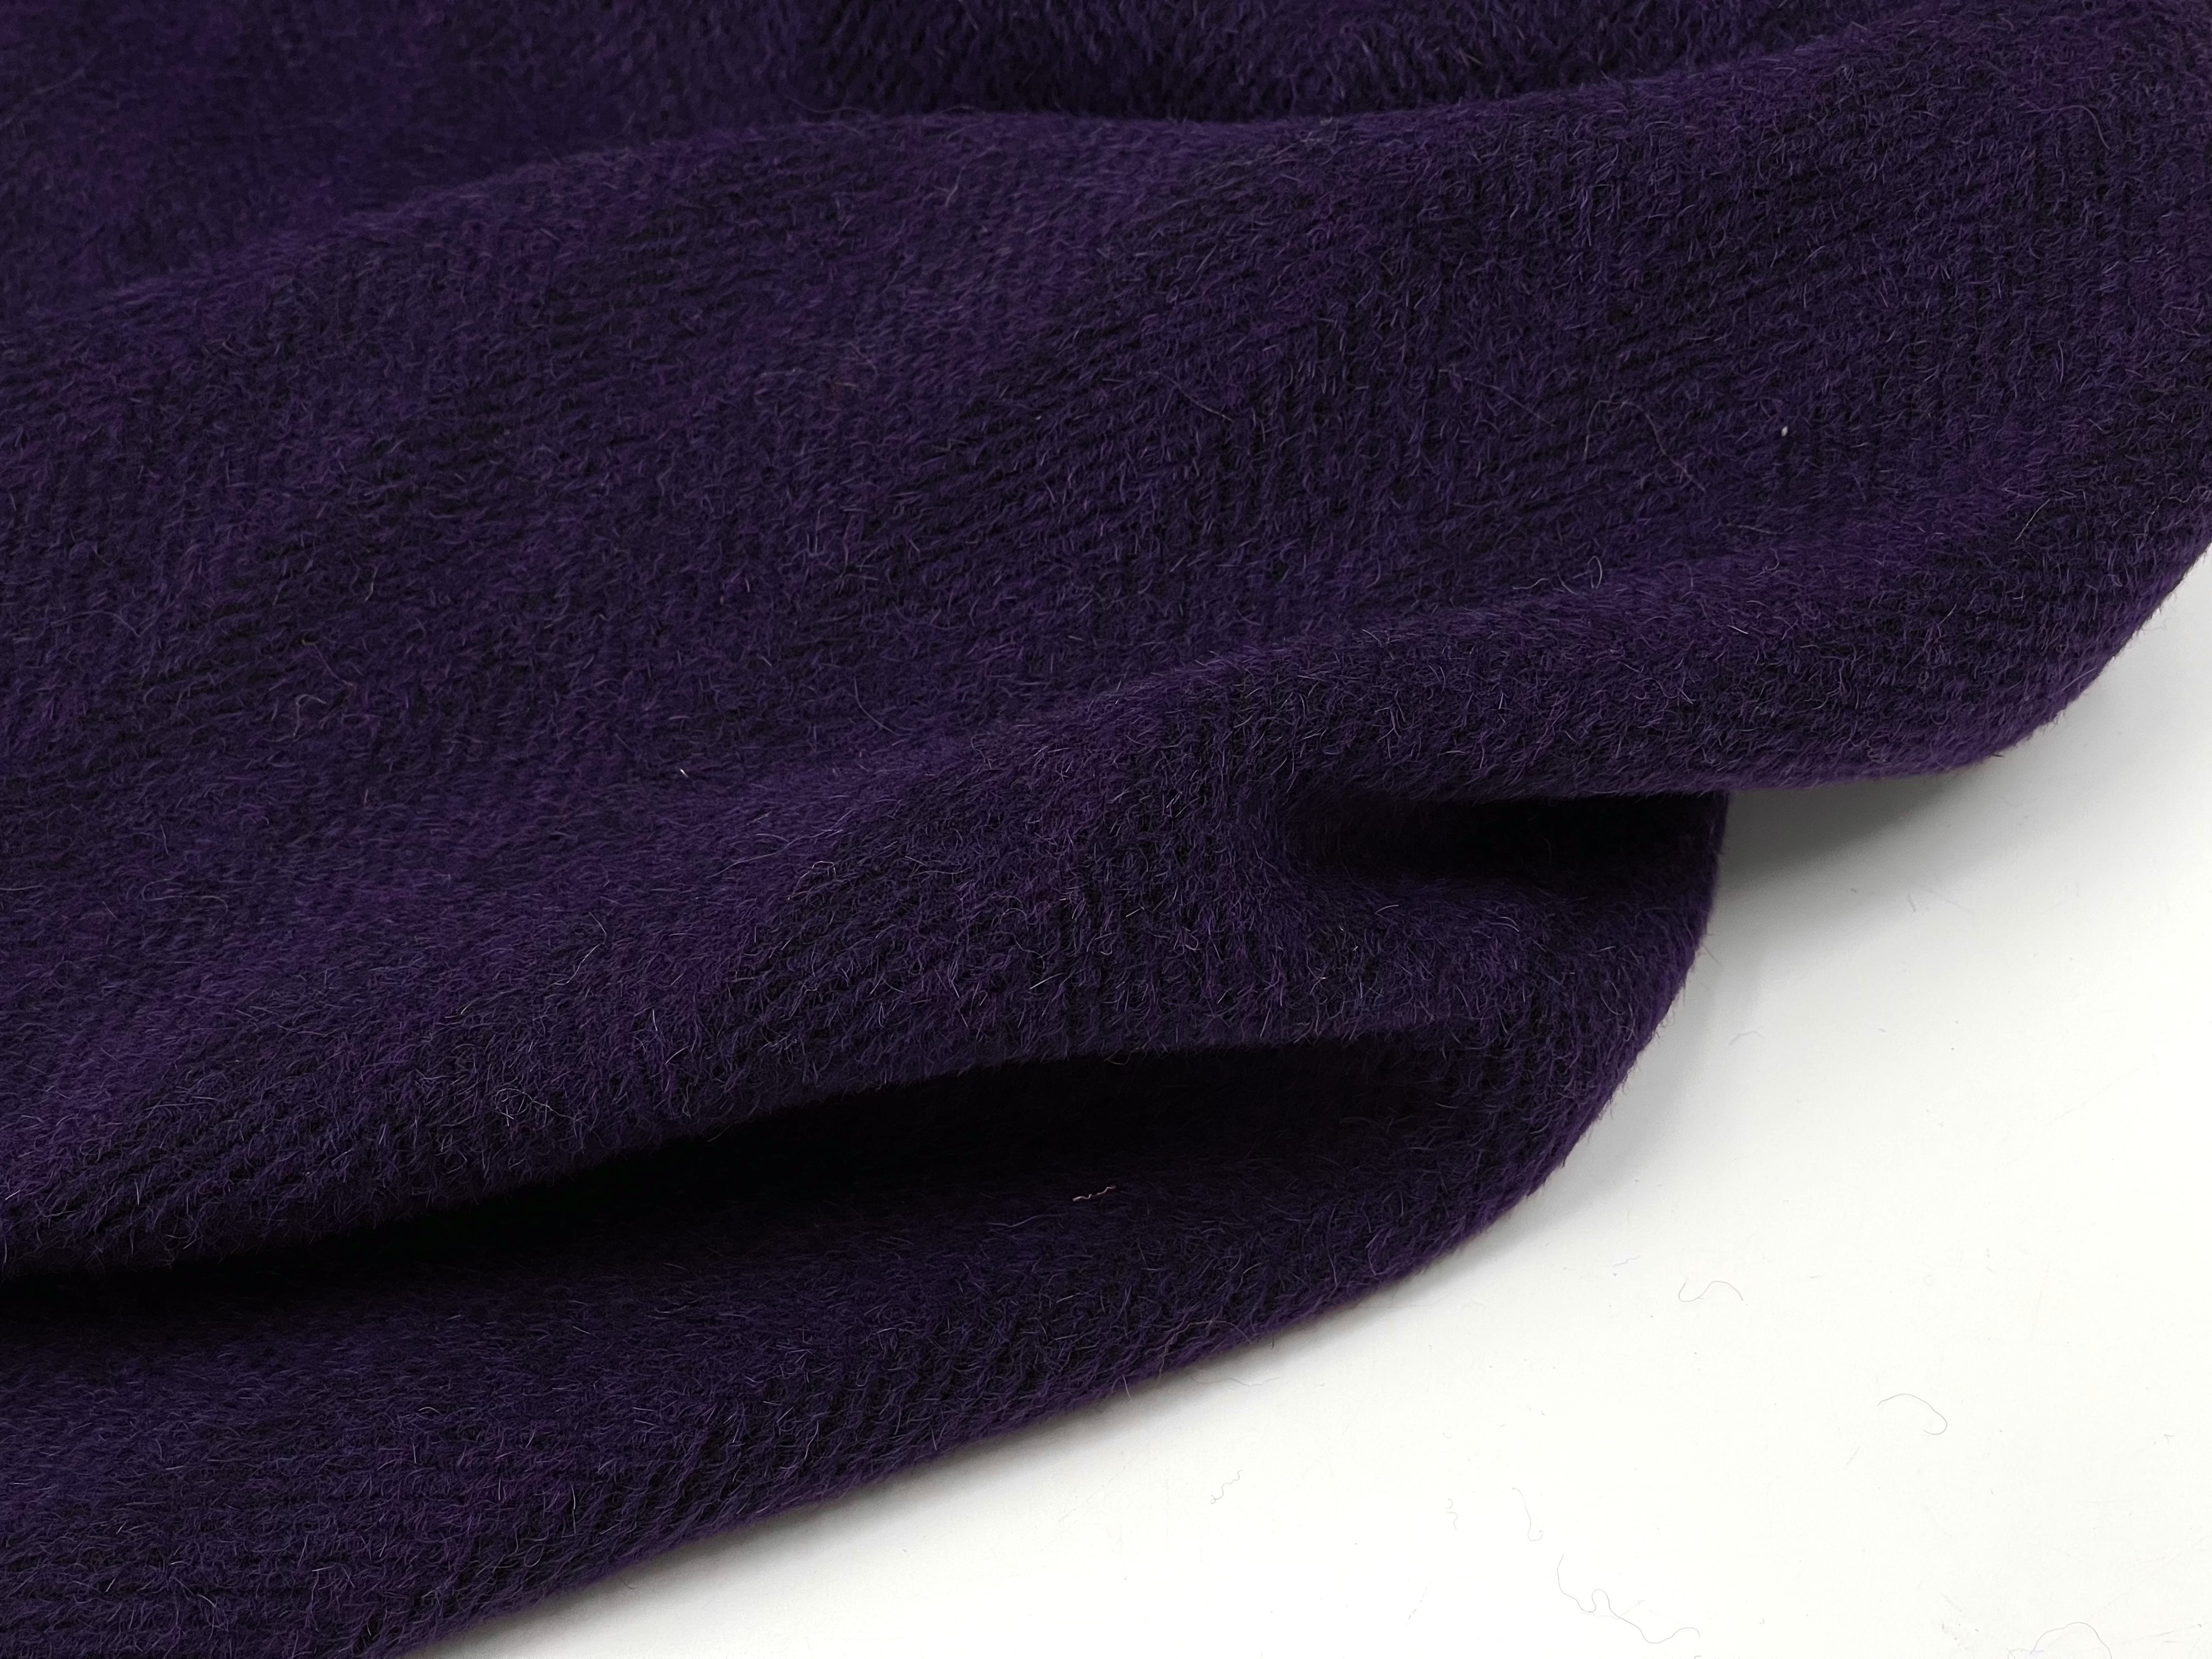 顺毛加厚 深紫色小人字纹羊毛羊绒毛呢面料秋冬大衣外套马甲面料